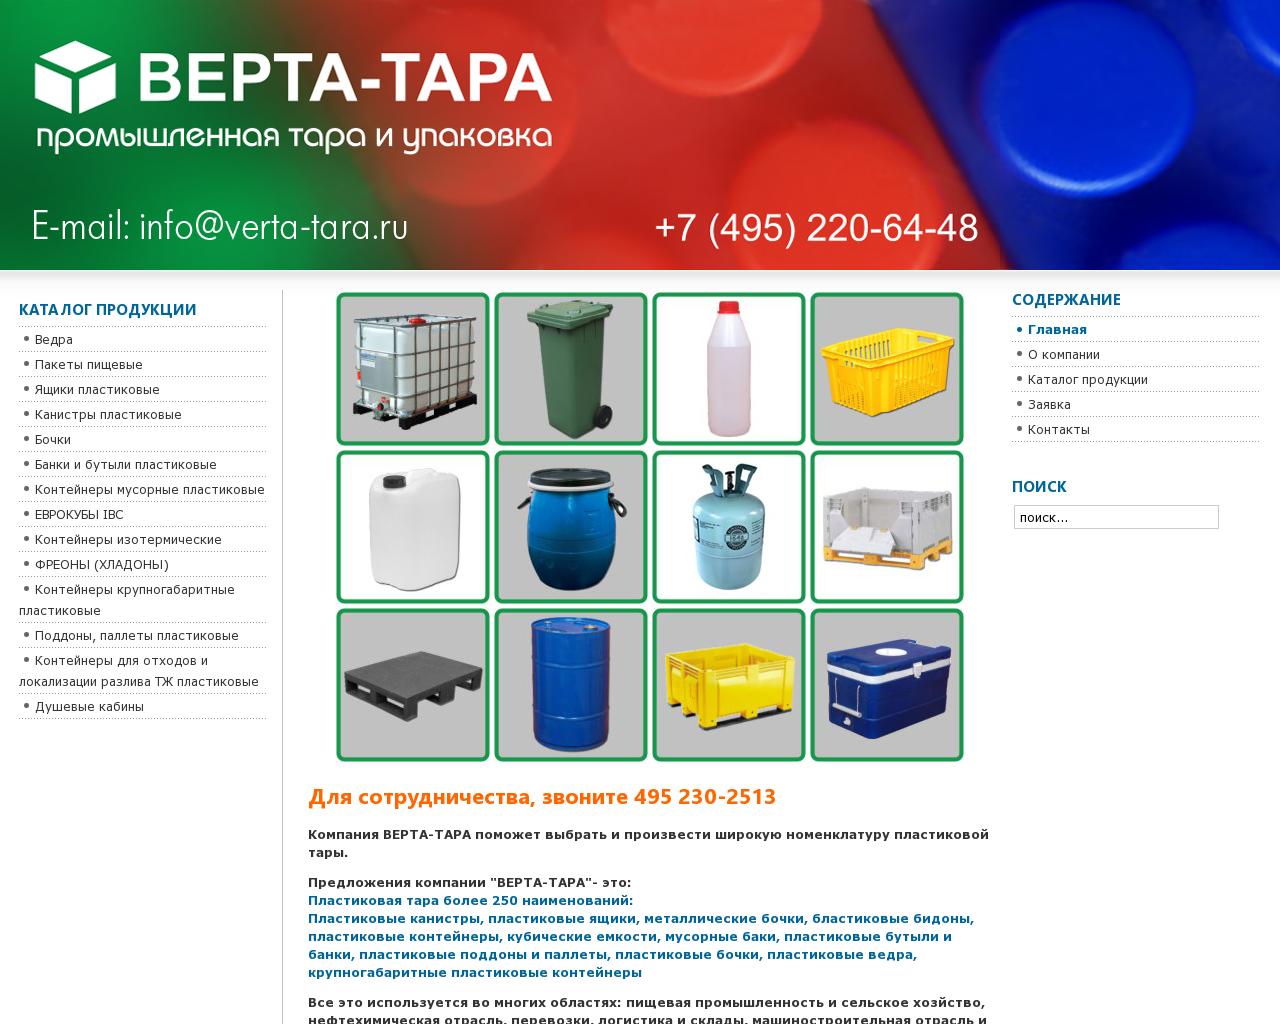 Изображение сайта verta-tara.ru в разрешении 1280x1024